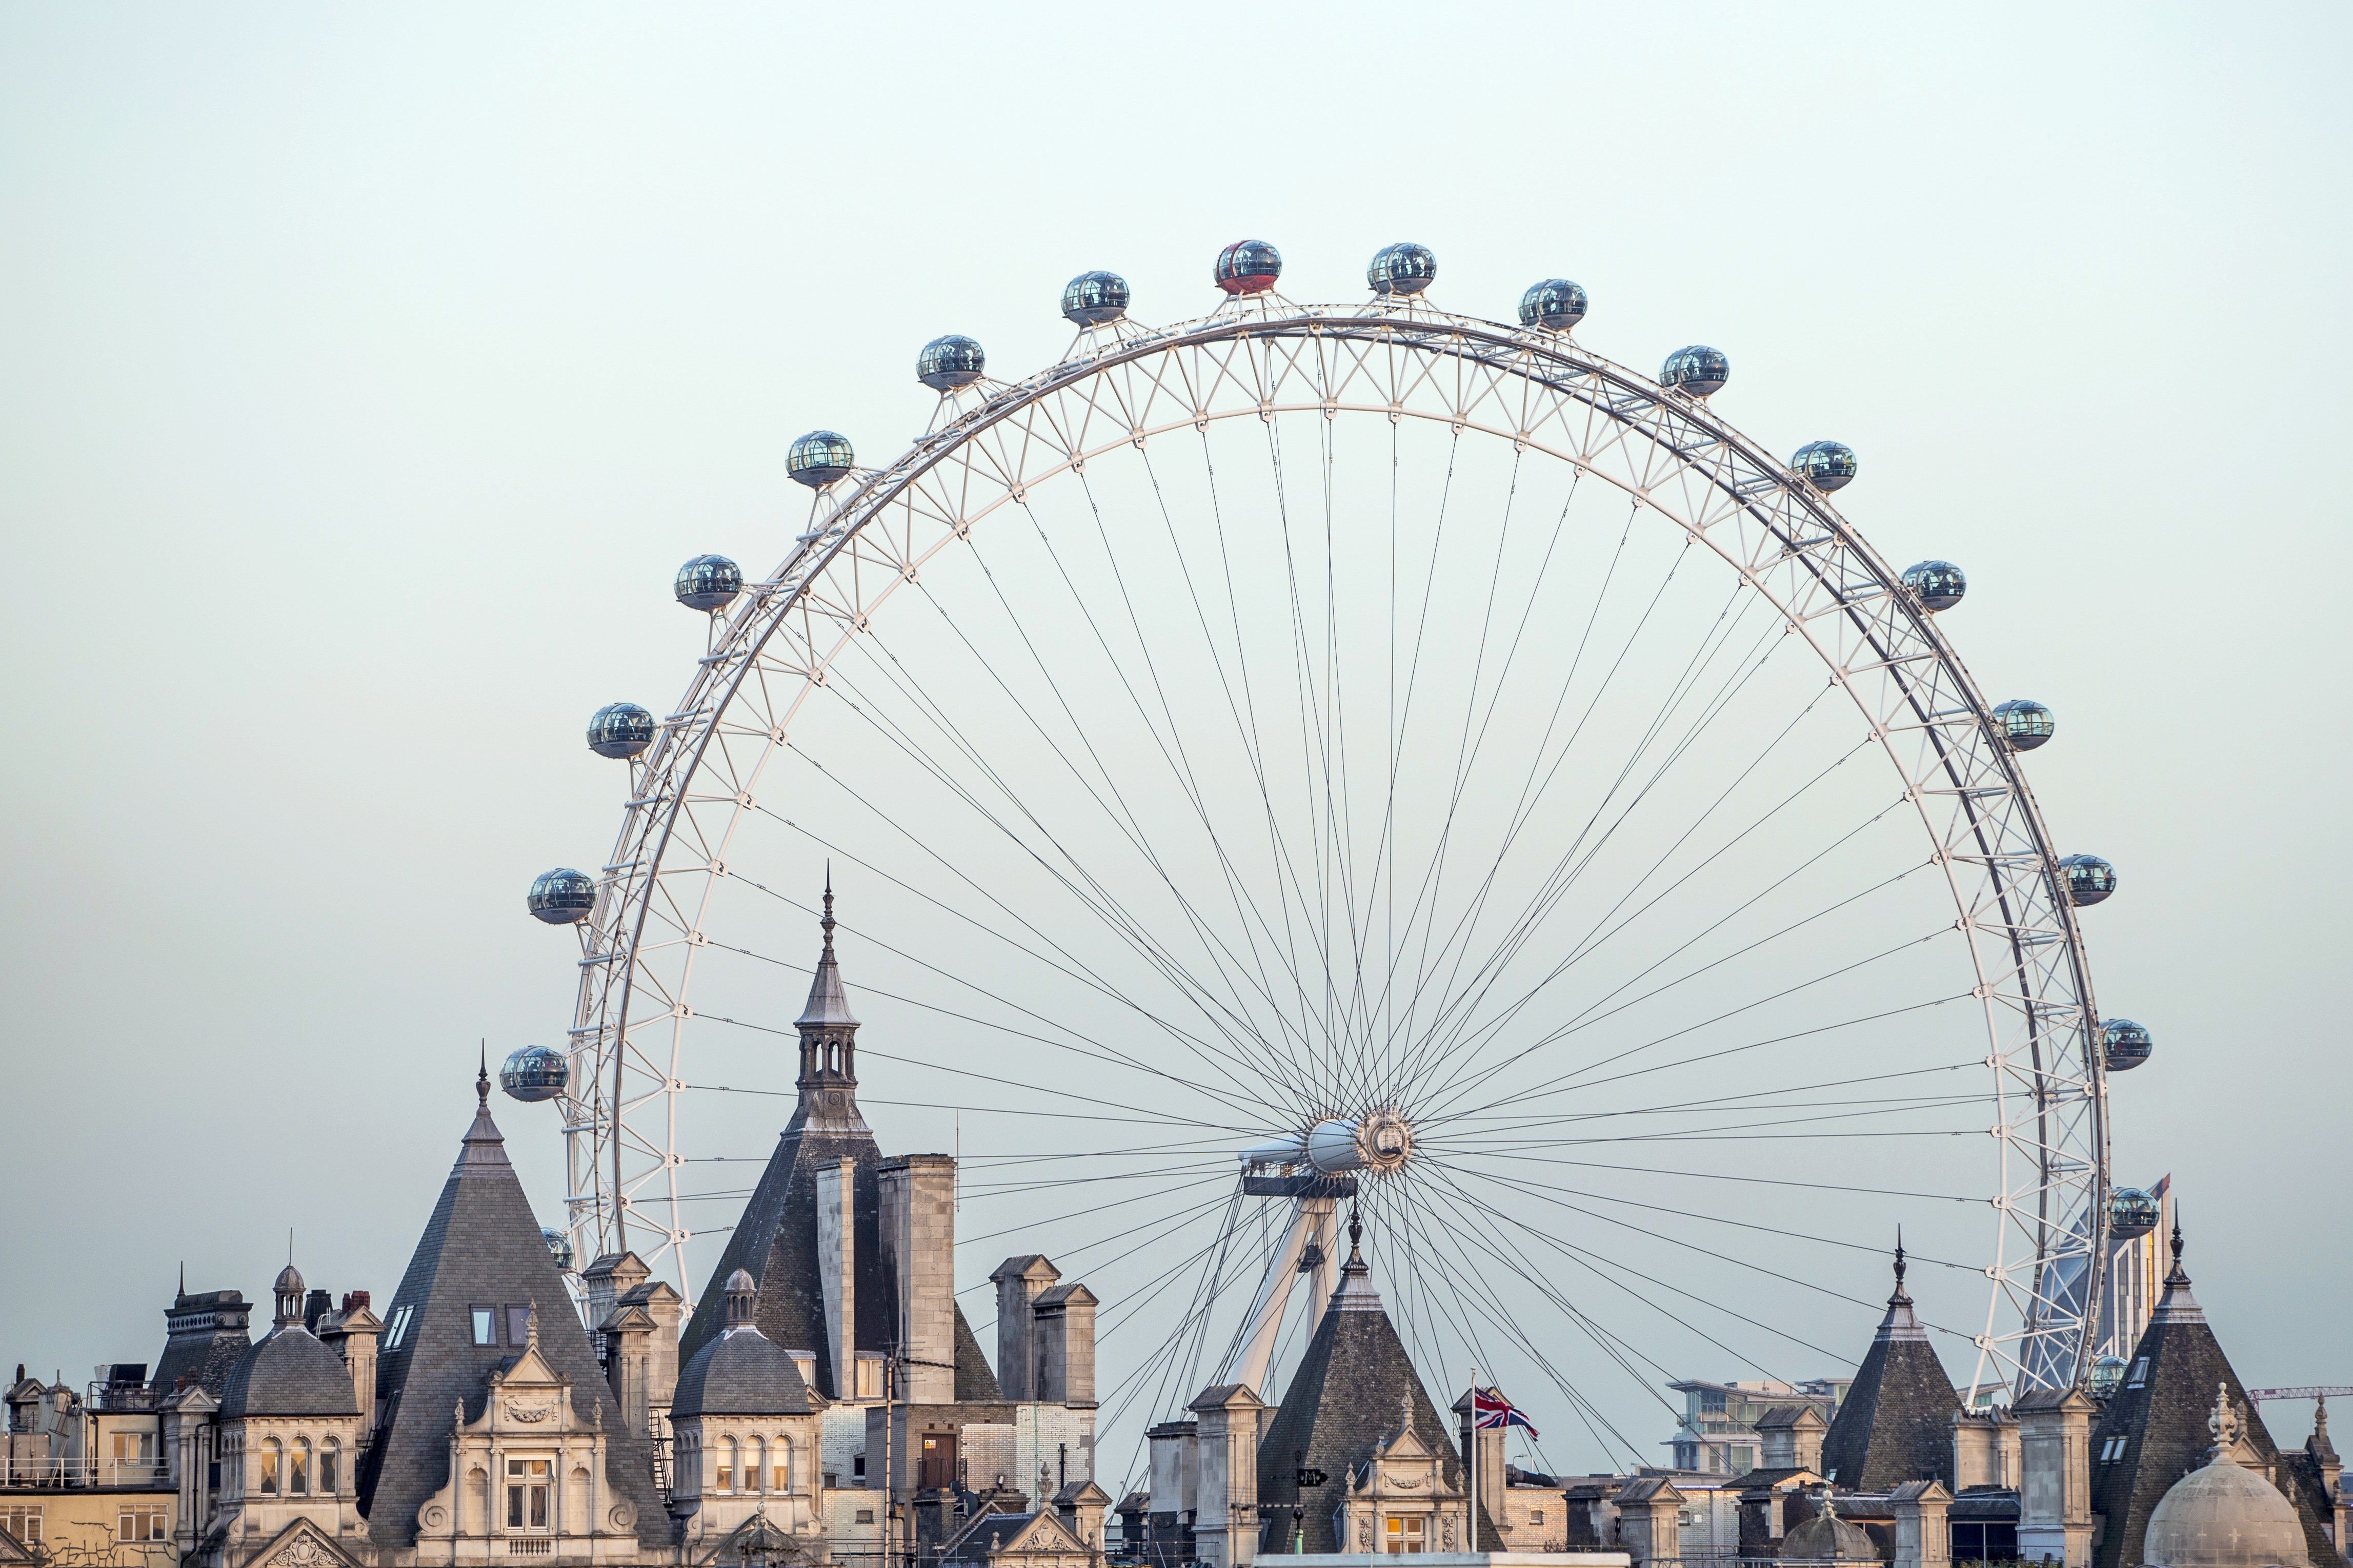 One of the london s. Лондонский глаз достопримечательности Лондона. Великобритания колесо обозрения London Eye. Достопримечательности Великобритании Лондонский глаз. «Лондонский глаз» (London Eye) или колесо обозрения.